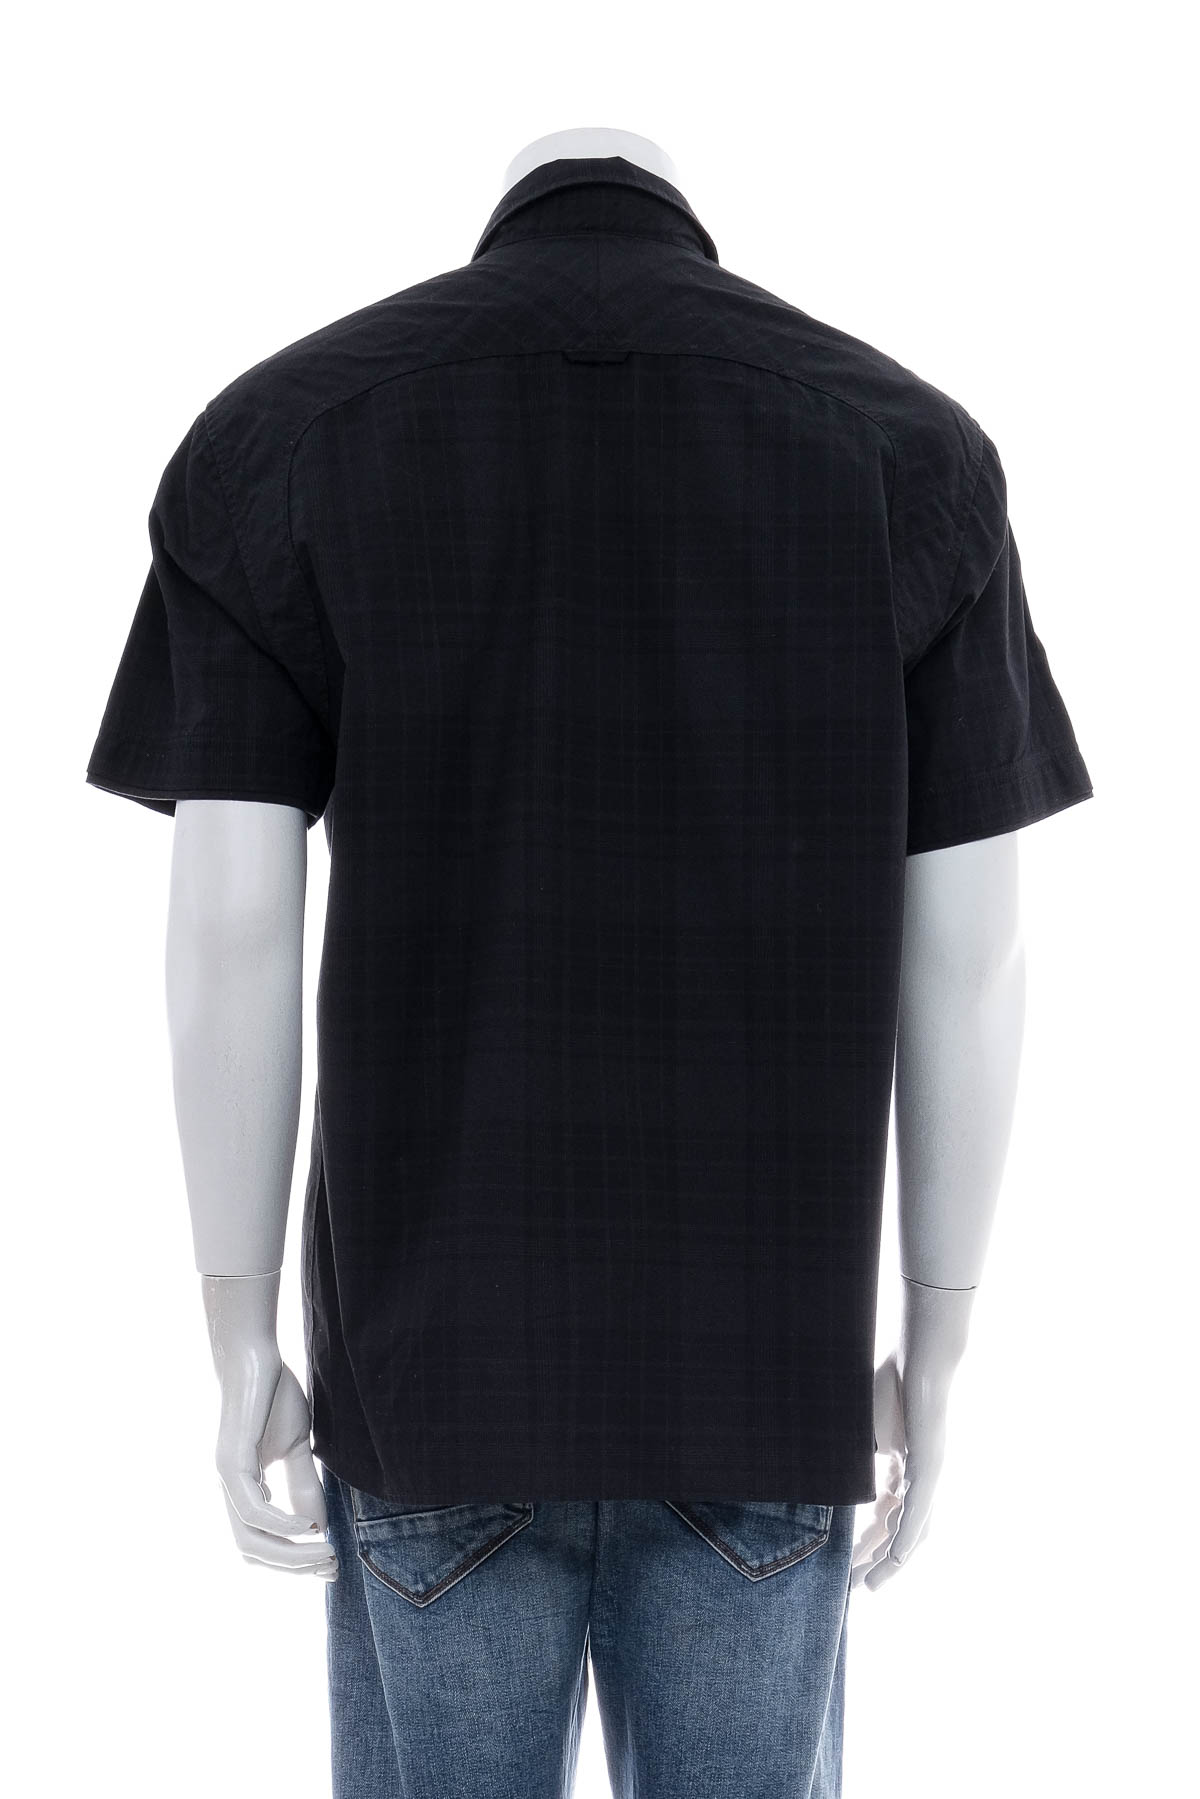 Men's shirt - TOM TAILOR - 1